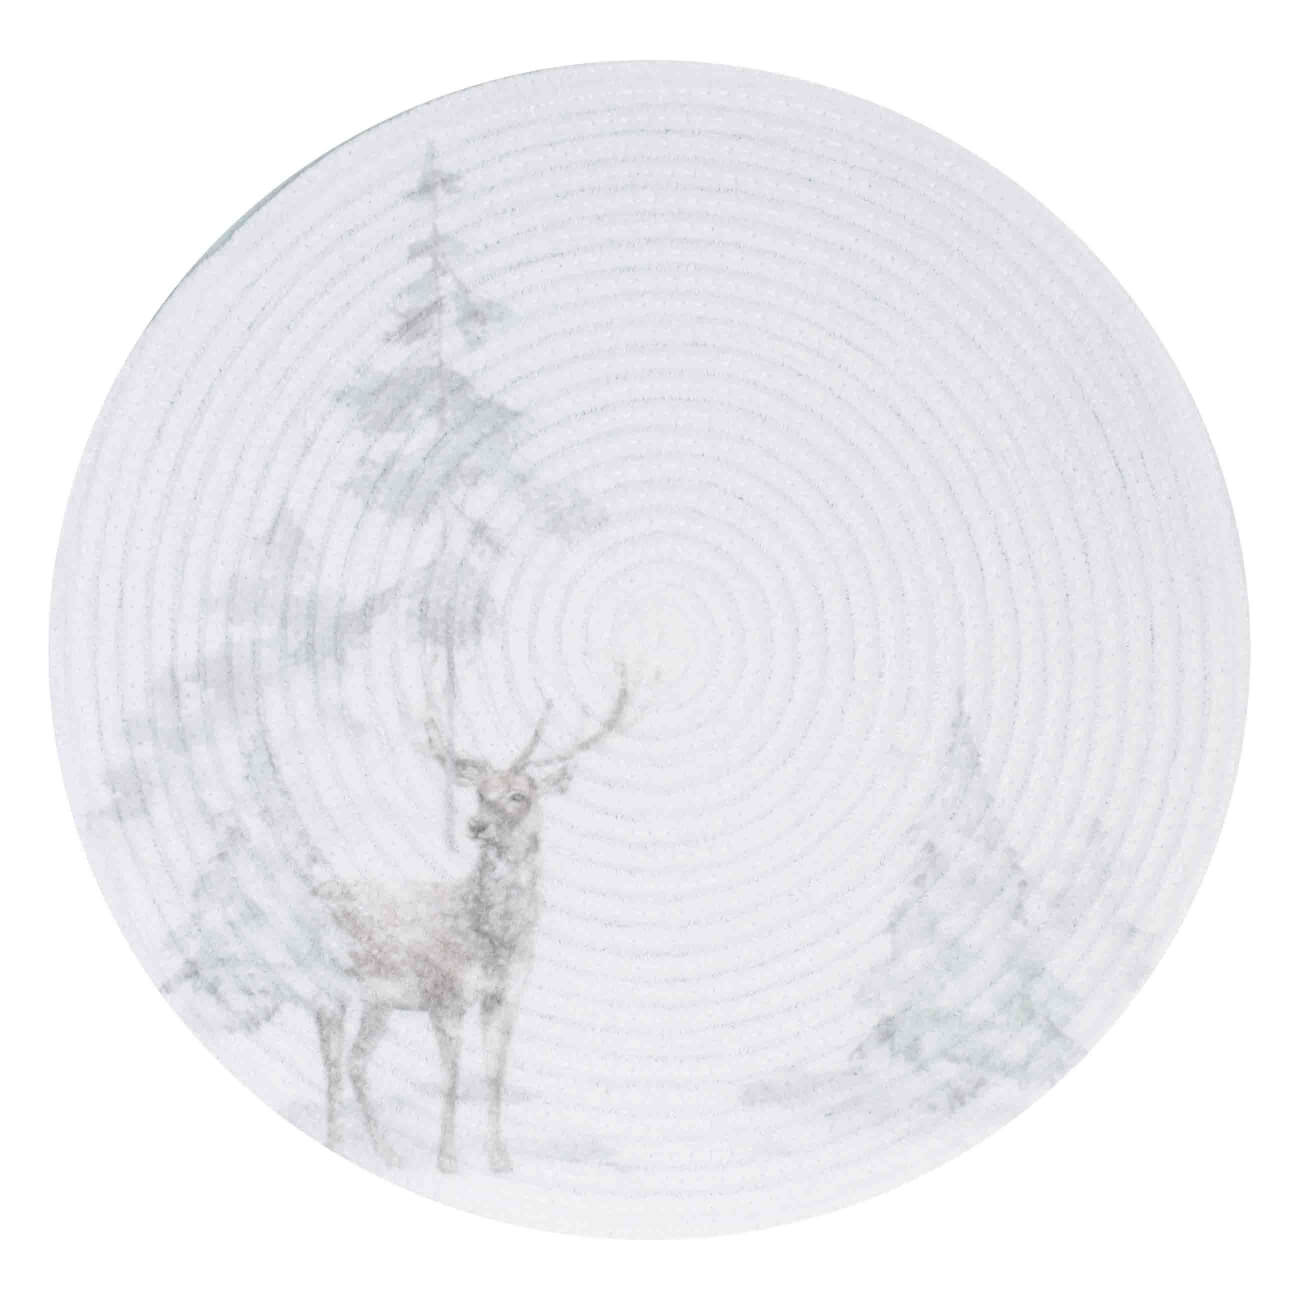 Салфетка под приборы, 38 см, полиэстер, круглая, белая, Олень в снежном лесу, Chenill print изображение № 1